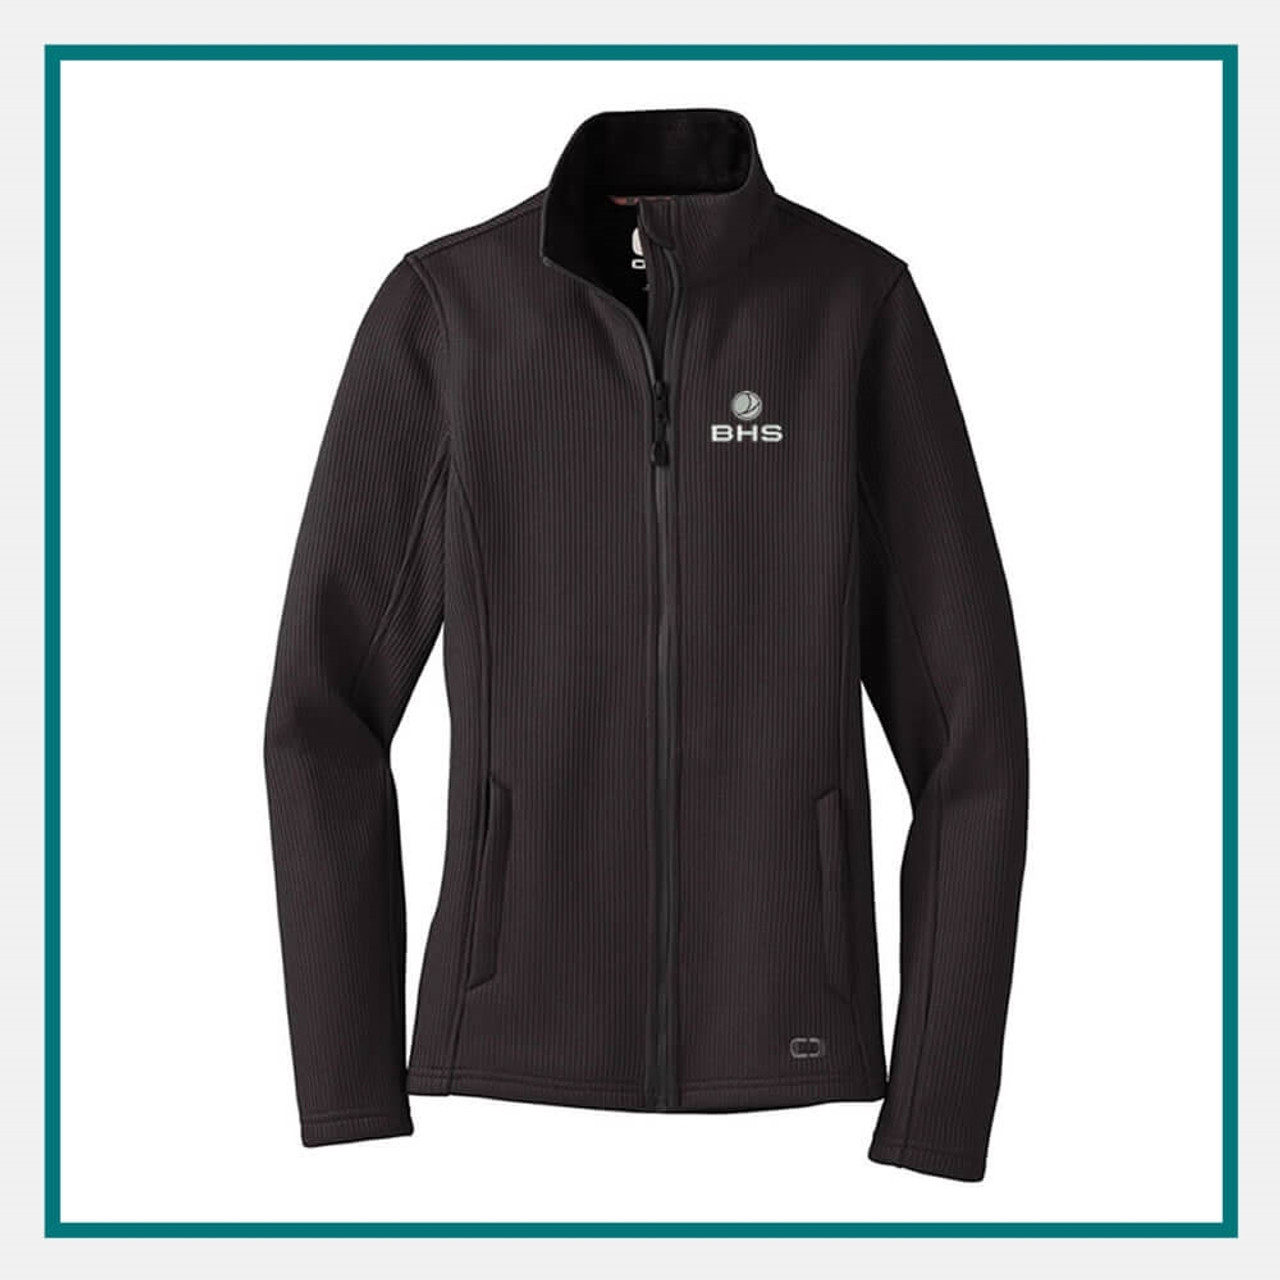 Ladies Monogrammed Fleece Jacket - Personalized Full Zip Cadet